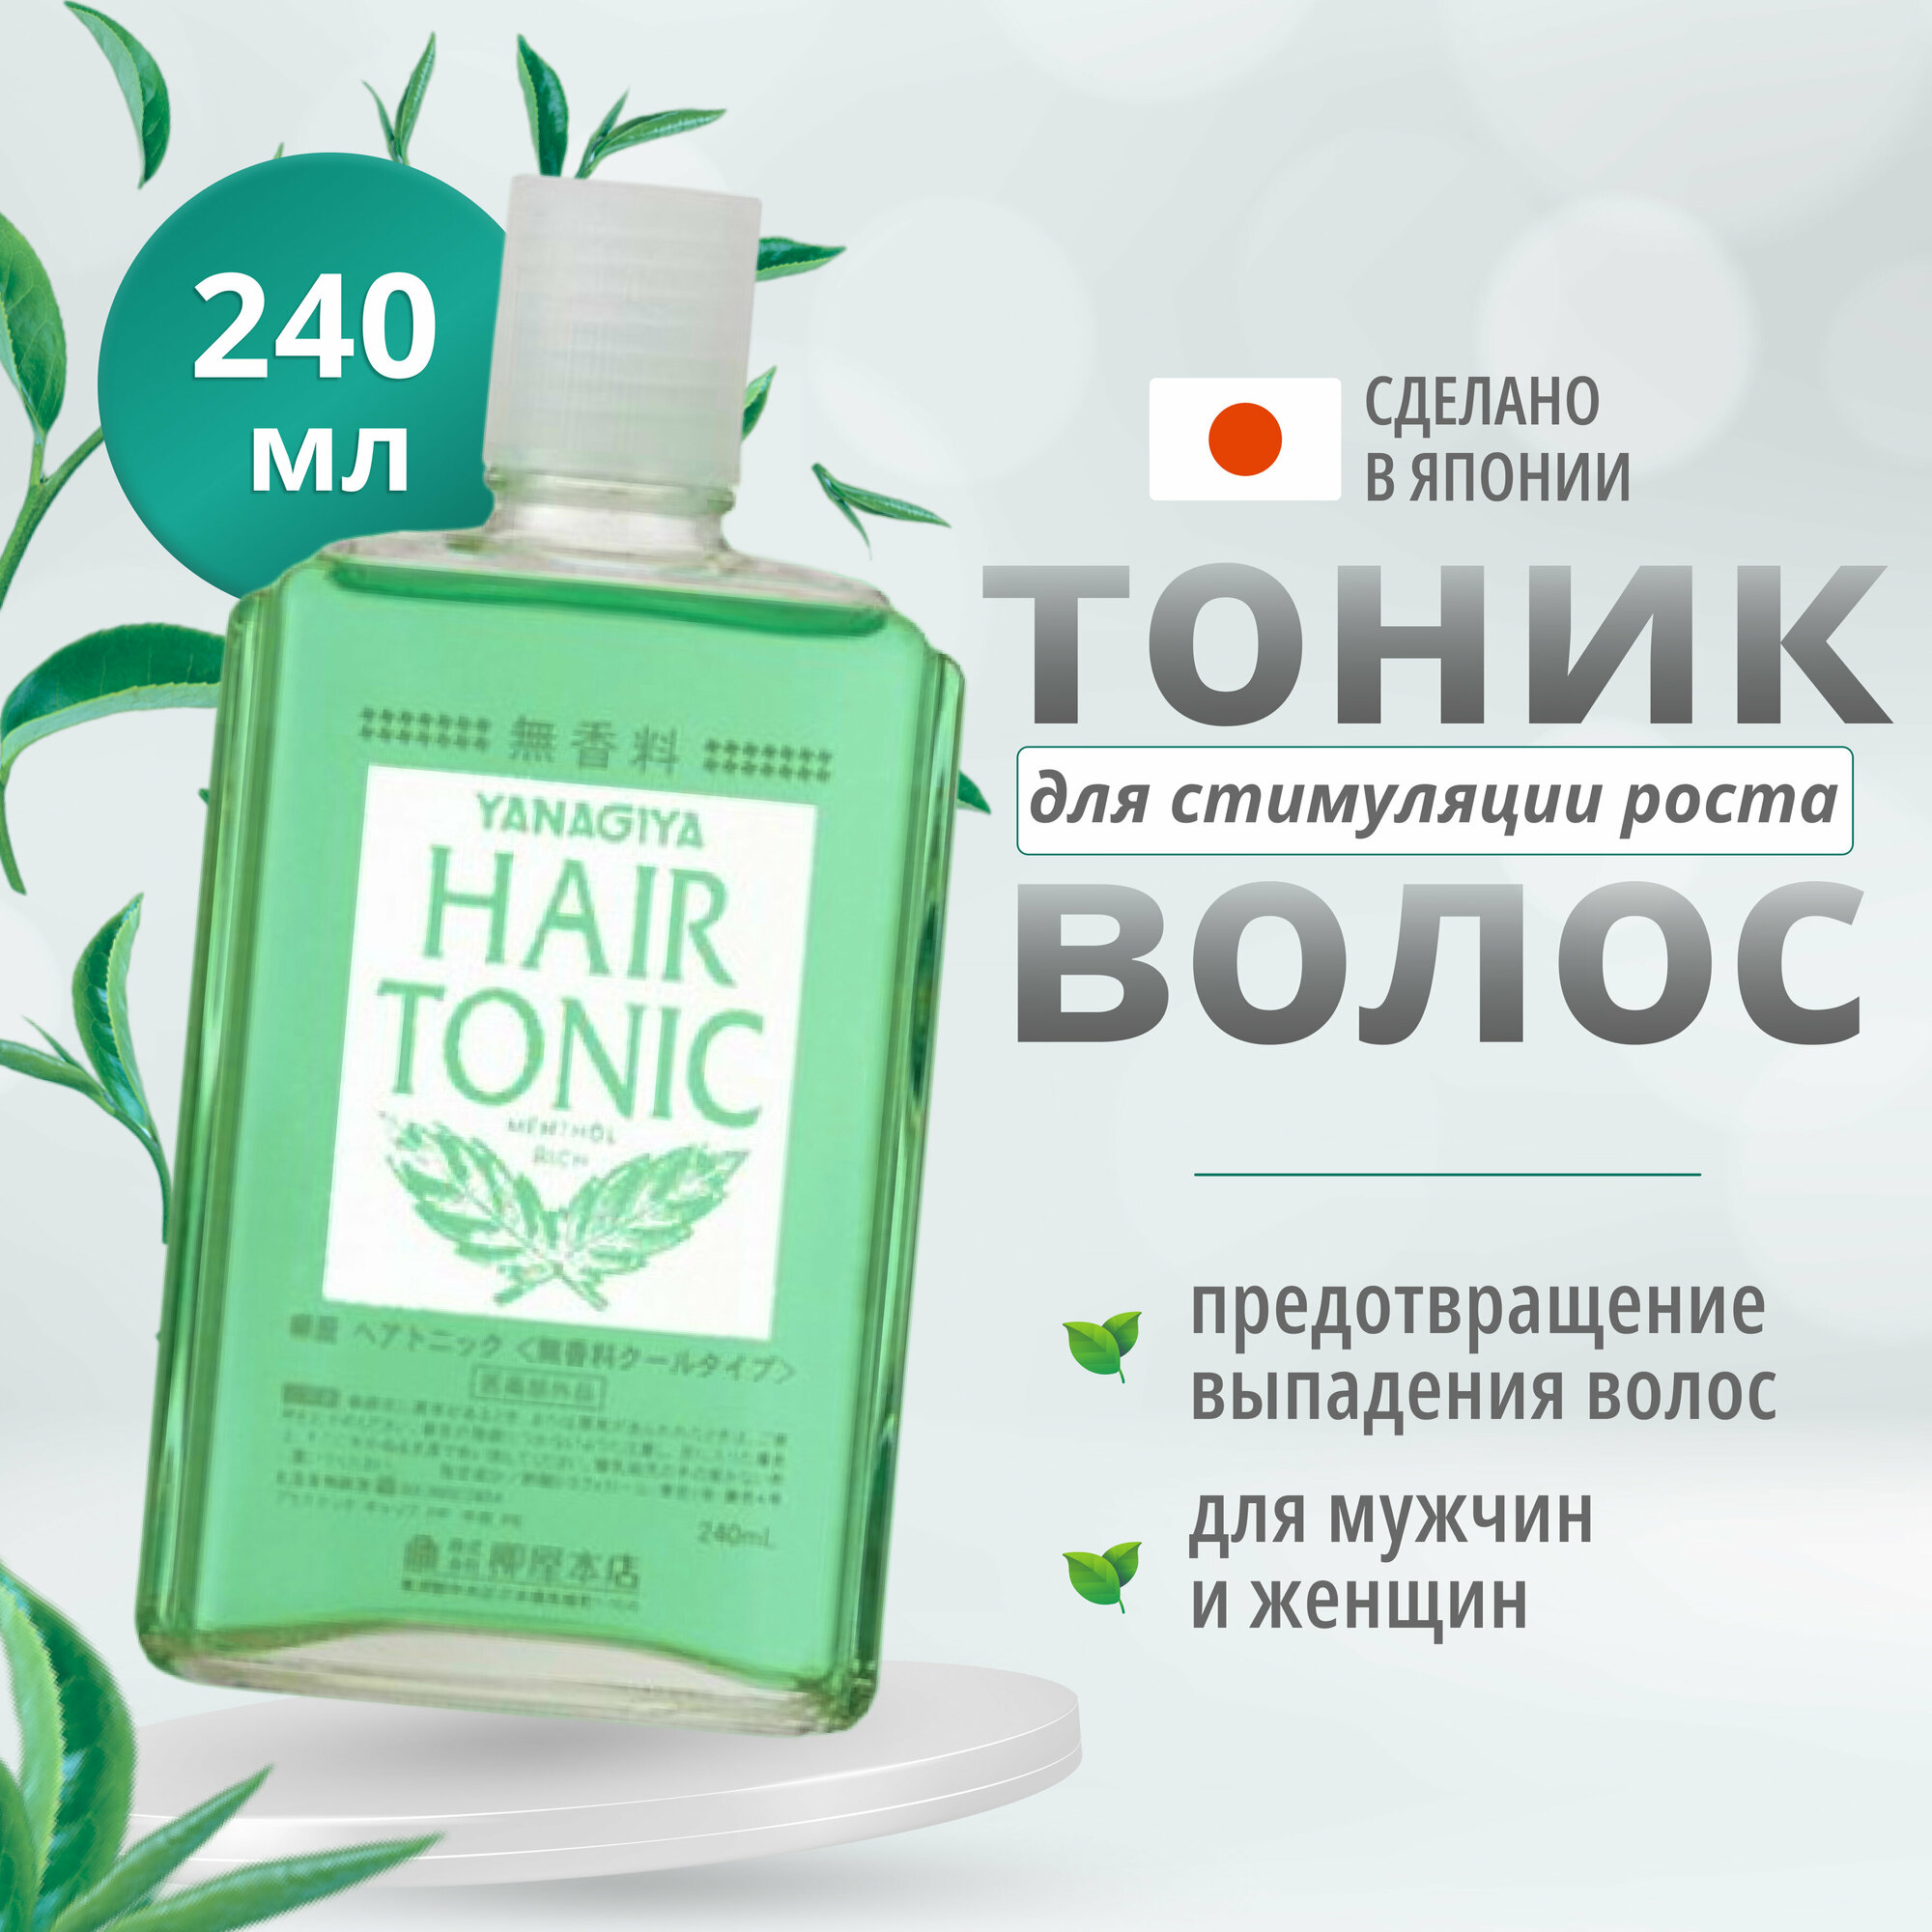 Yanagiya Лечебный тоник для роста волос "Hair Tonic" 240 мл, Япония / Средство для роста волос, уменьшение выпадения, активатор